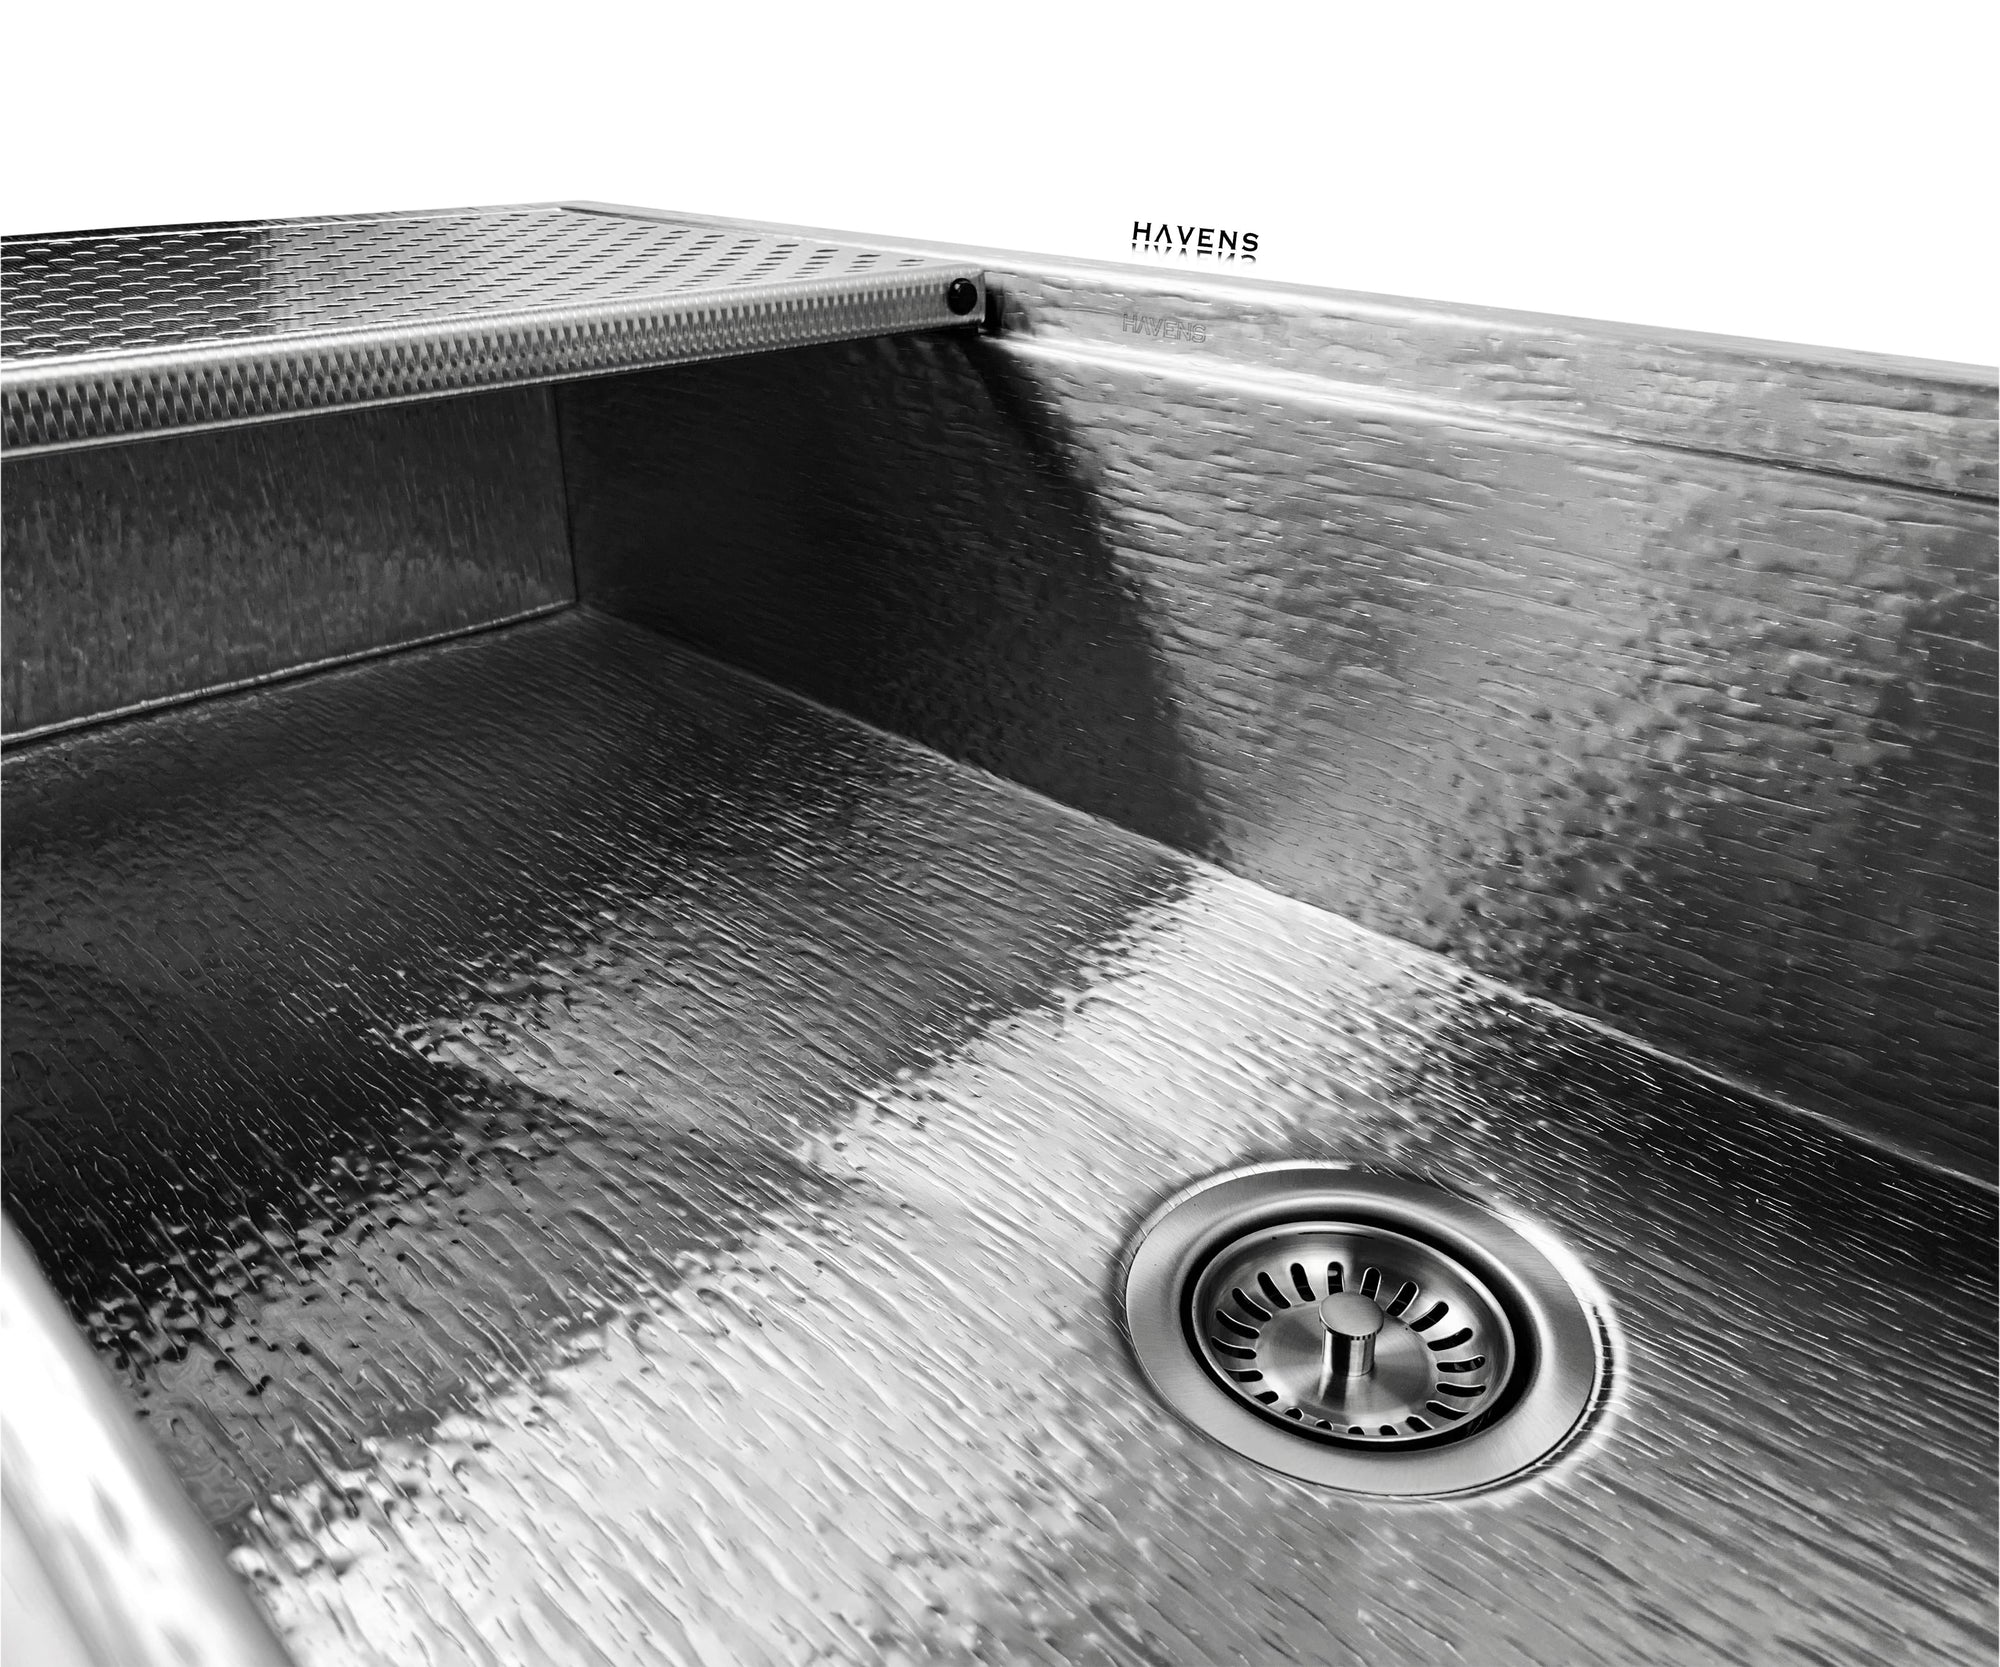 Custom Legacy Topmount Sink  - Stainless Steel